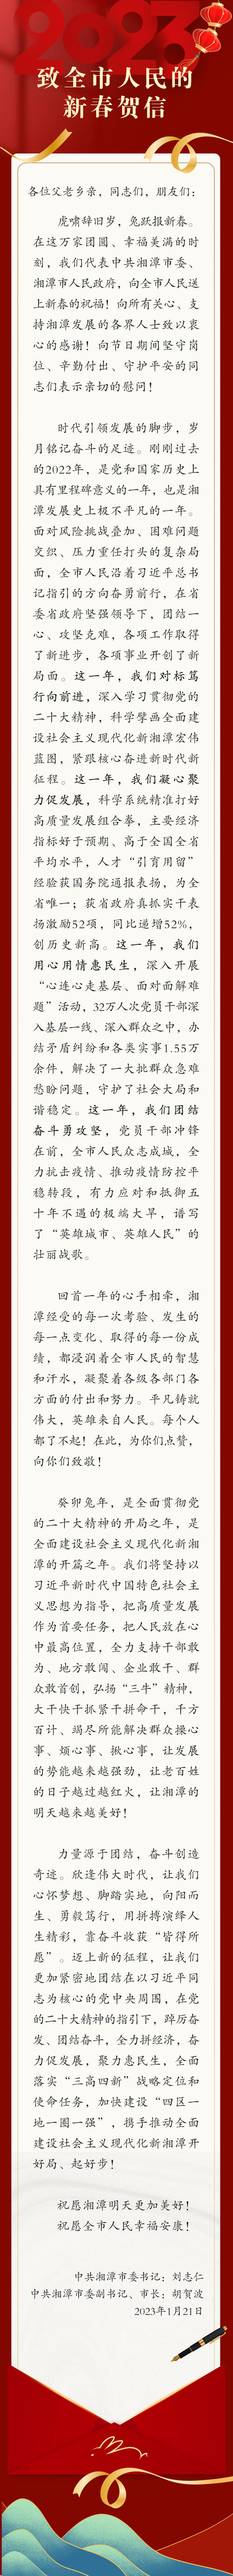 湘潭市委书记、市长致全市人民的新春贺信